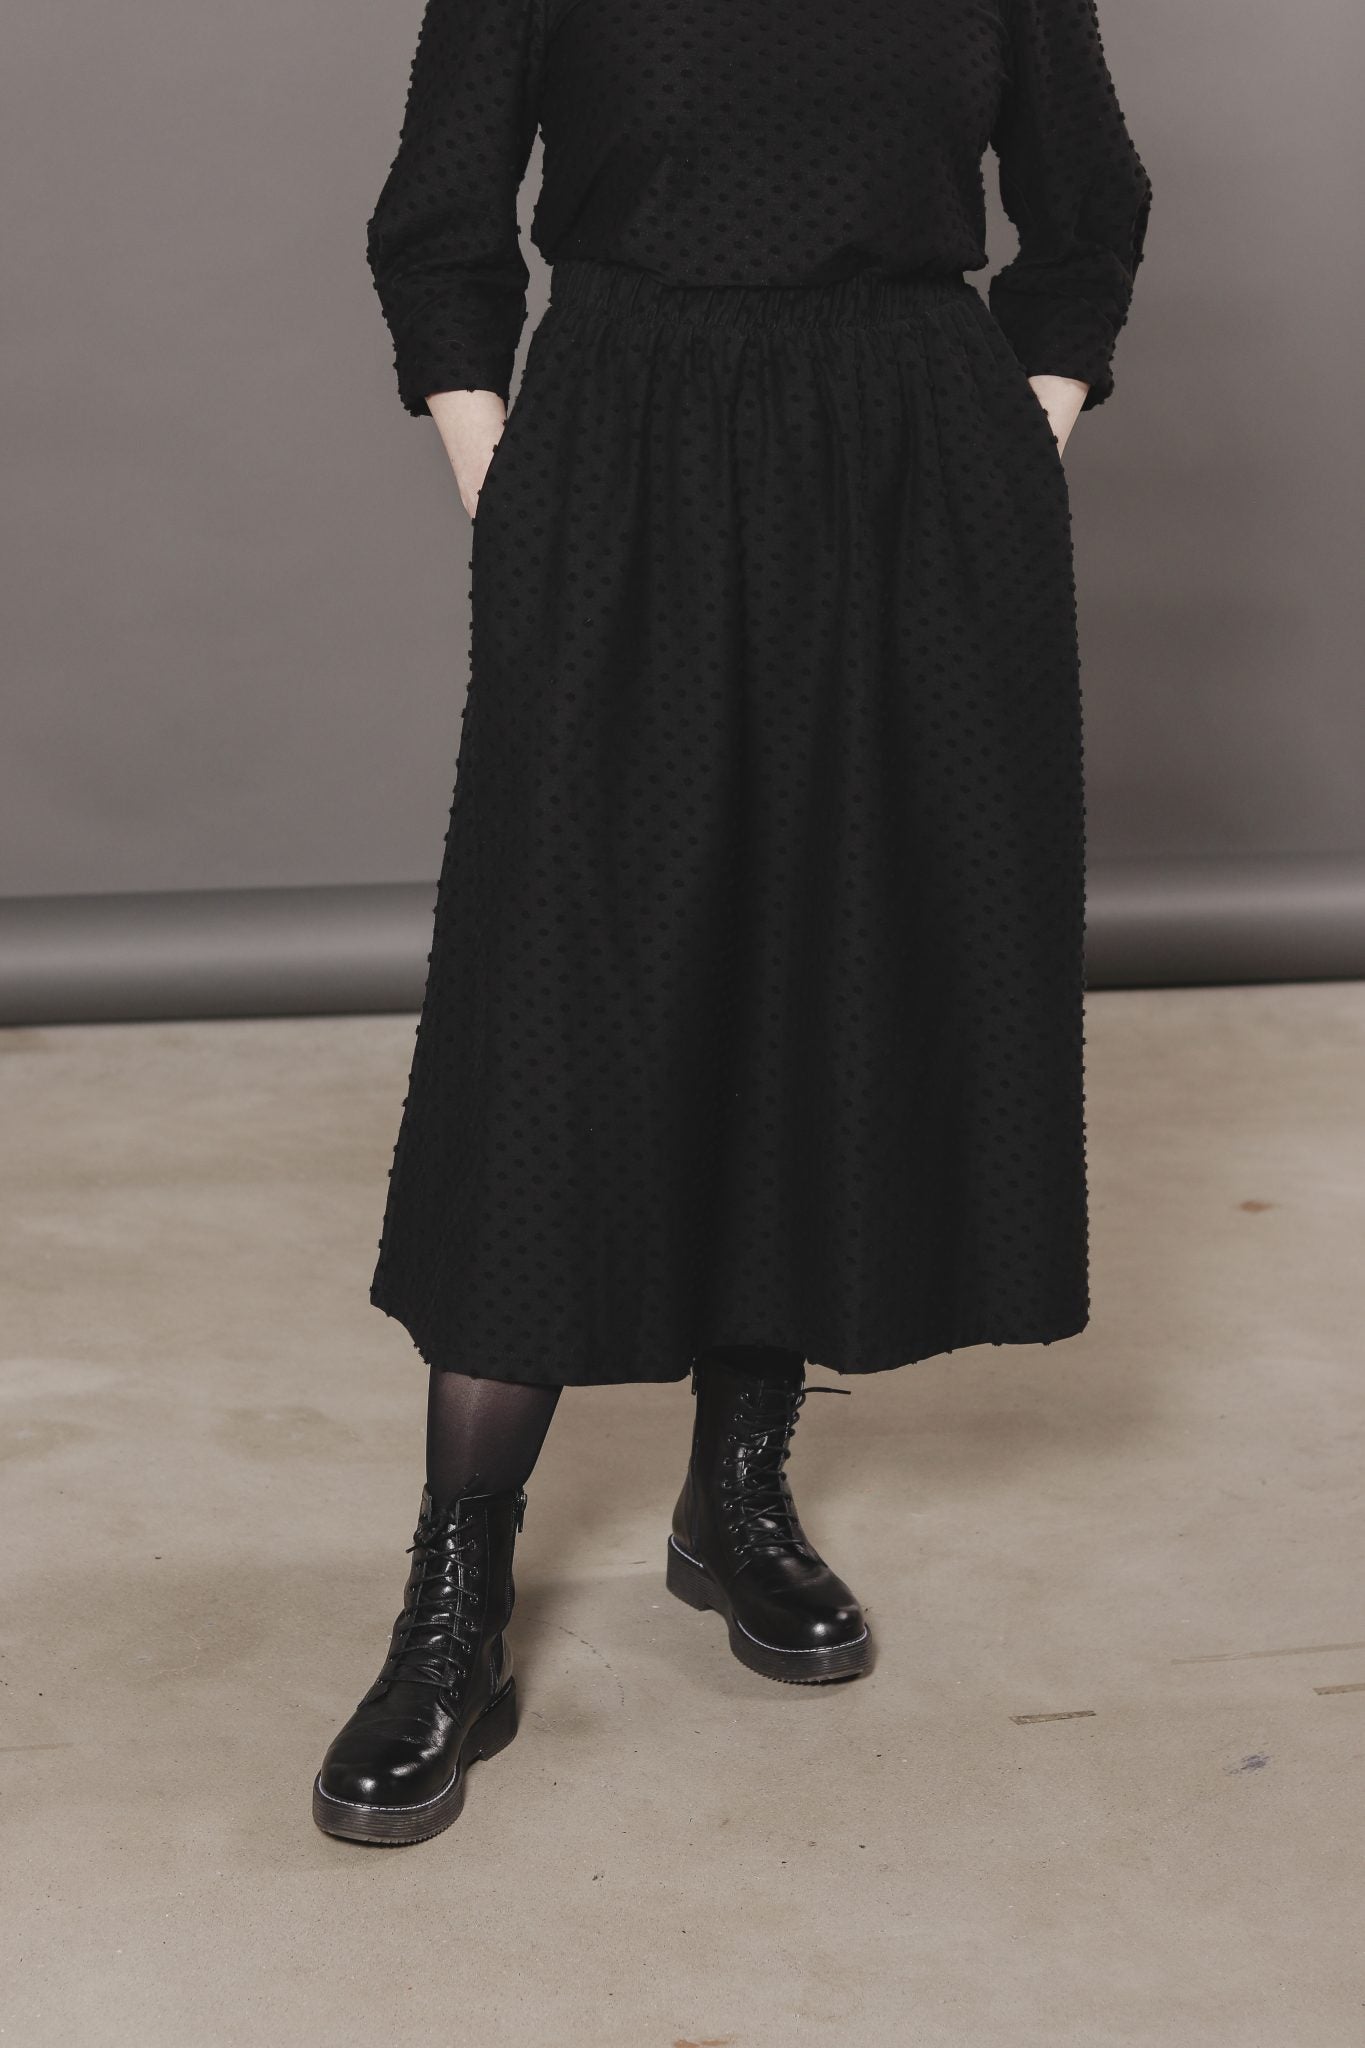 Ana skirt, black dot